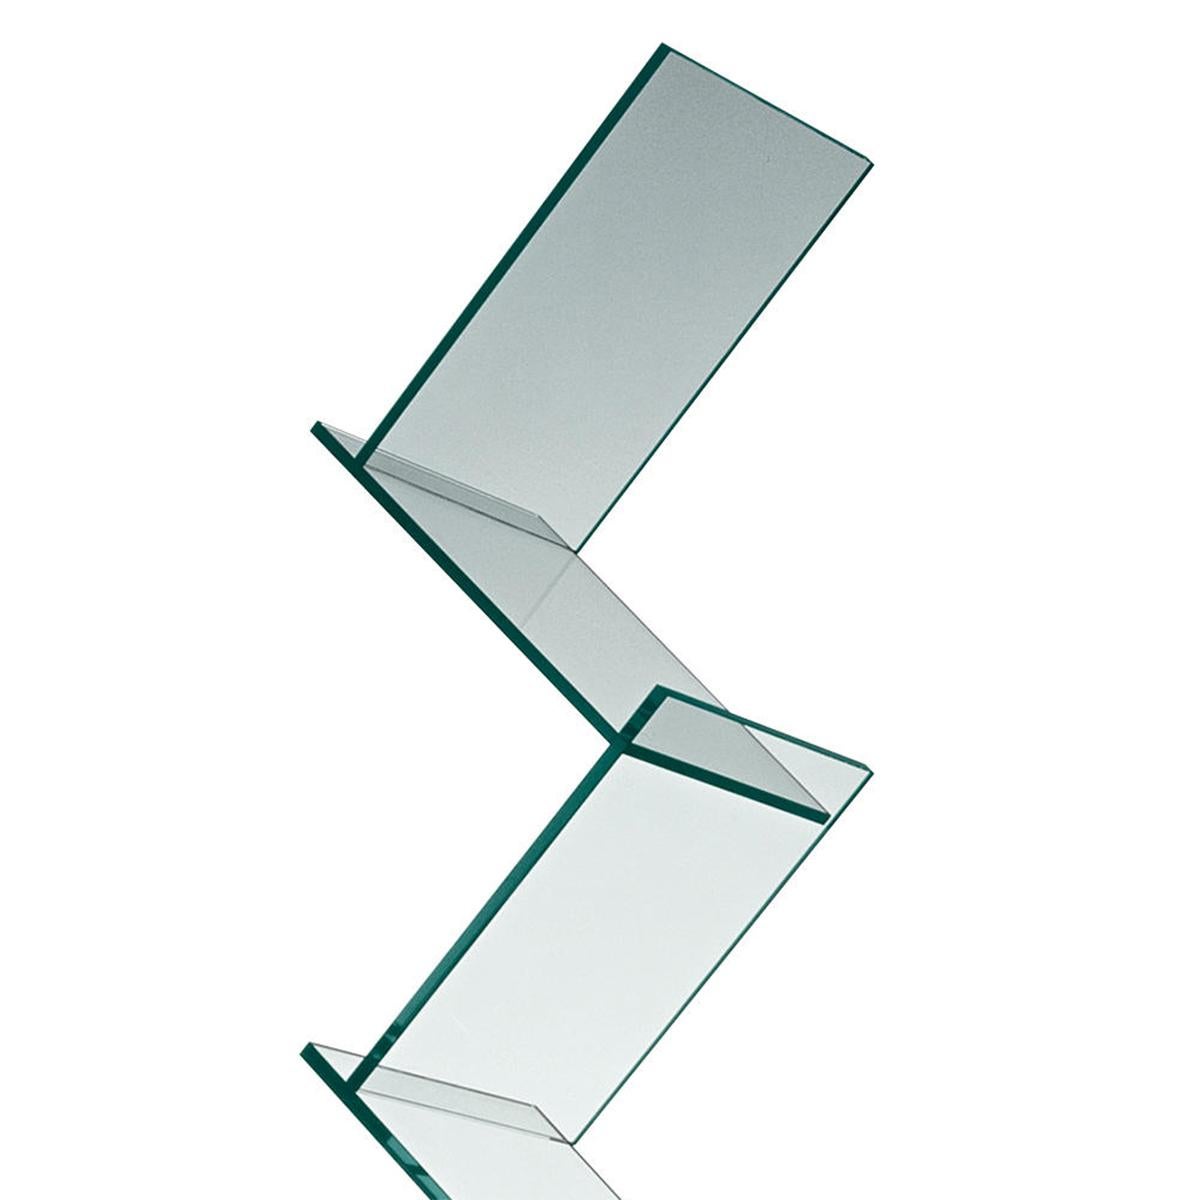 Escalier d'étagère en verre avec toute la structure en verre clair
Avec 6 étagères inclinées. Étagère sur base pivotante.